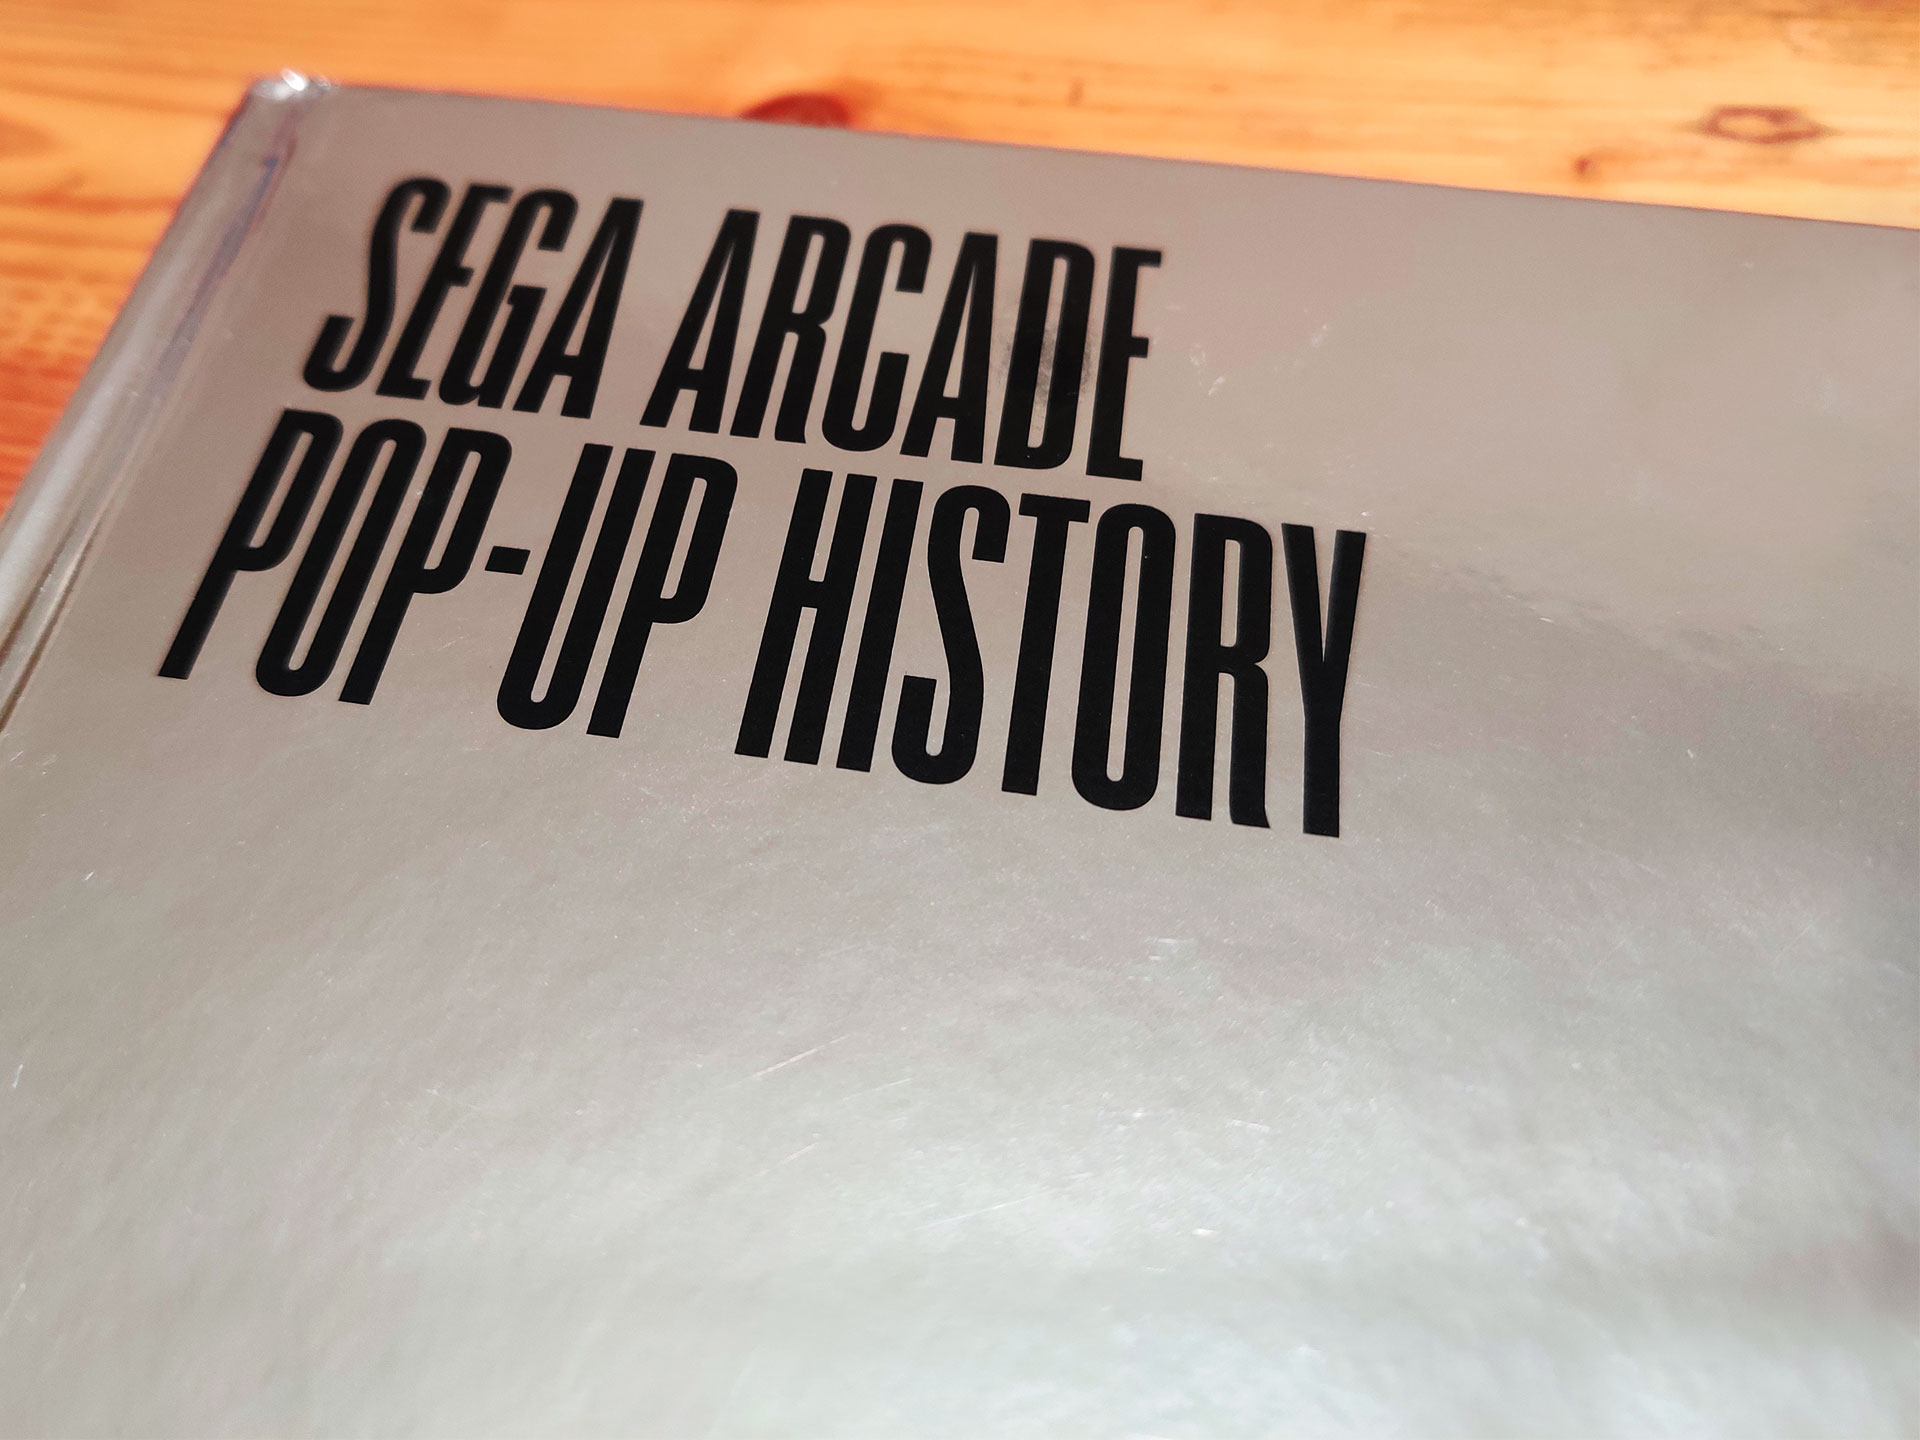 SEGA Arcade: Pop-Up History